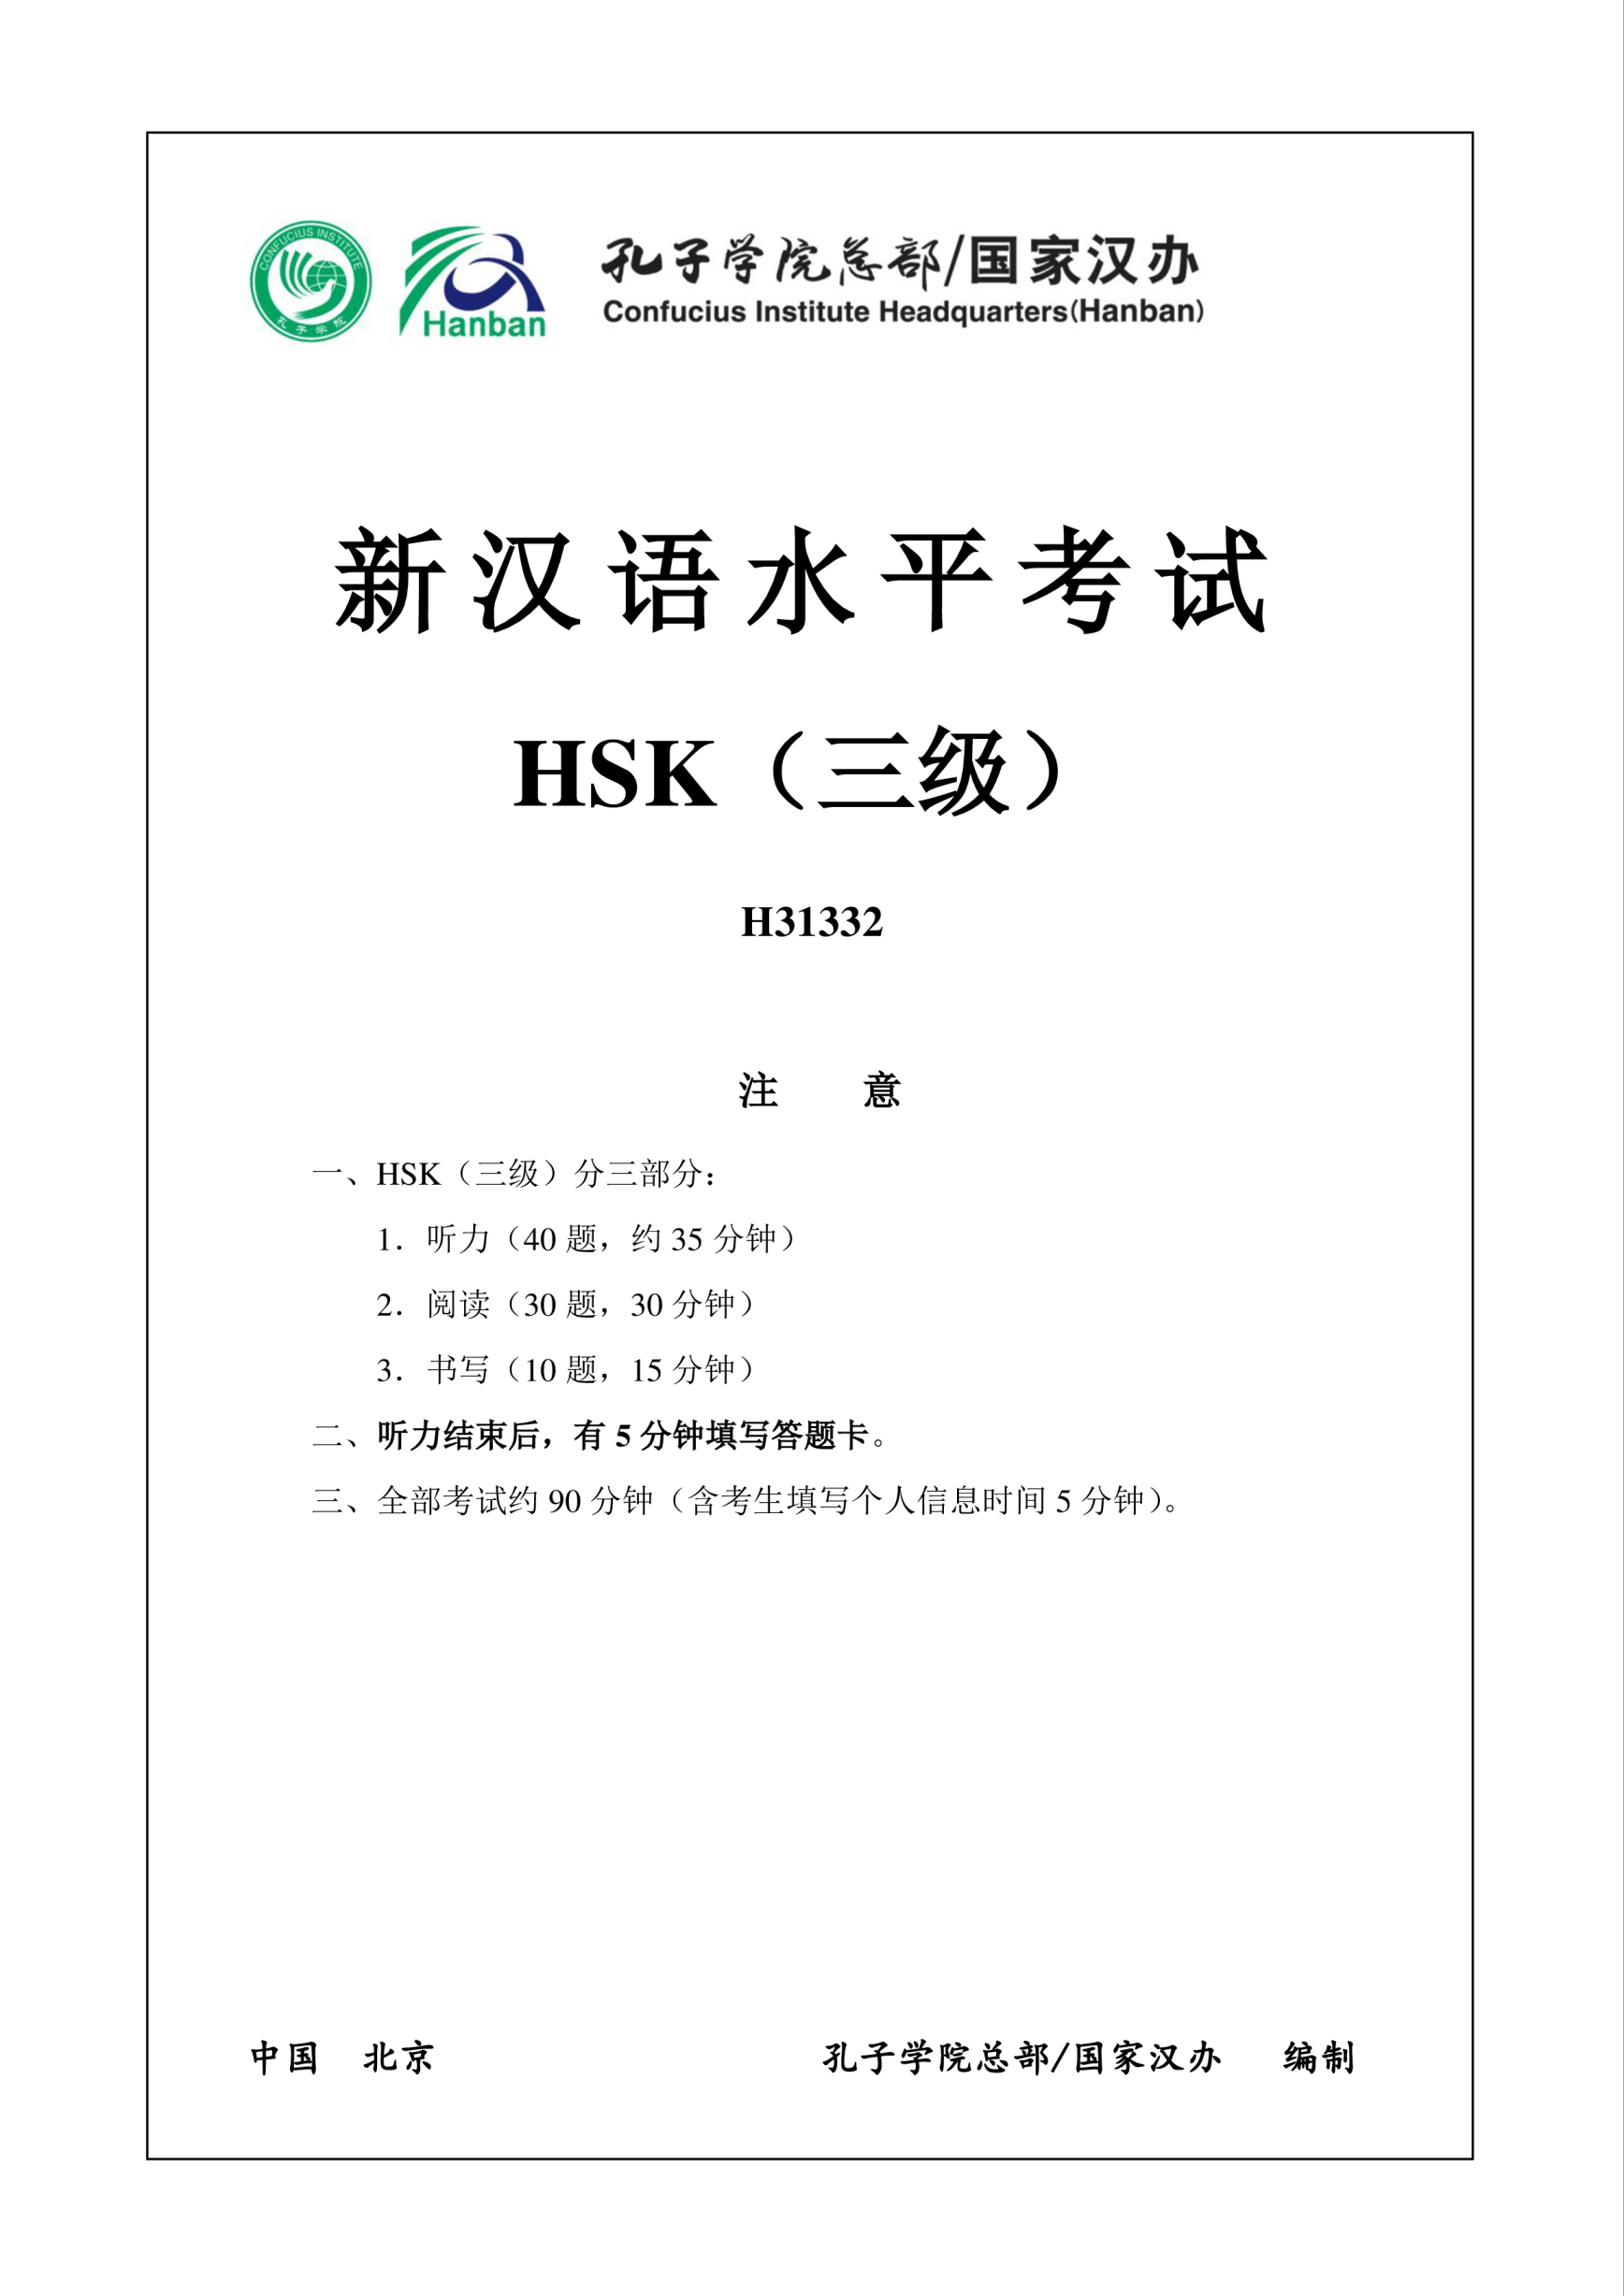 Vorschaubild der VorlageHSK3 Chinese Exam incl Audio and Answers # H31332